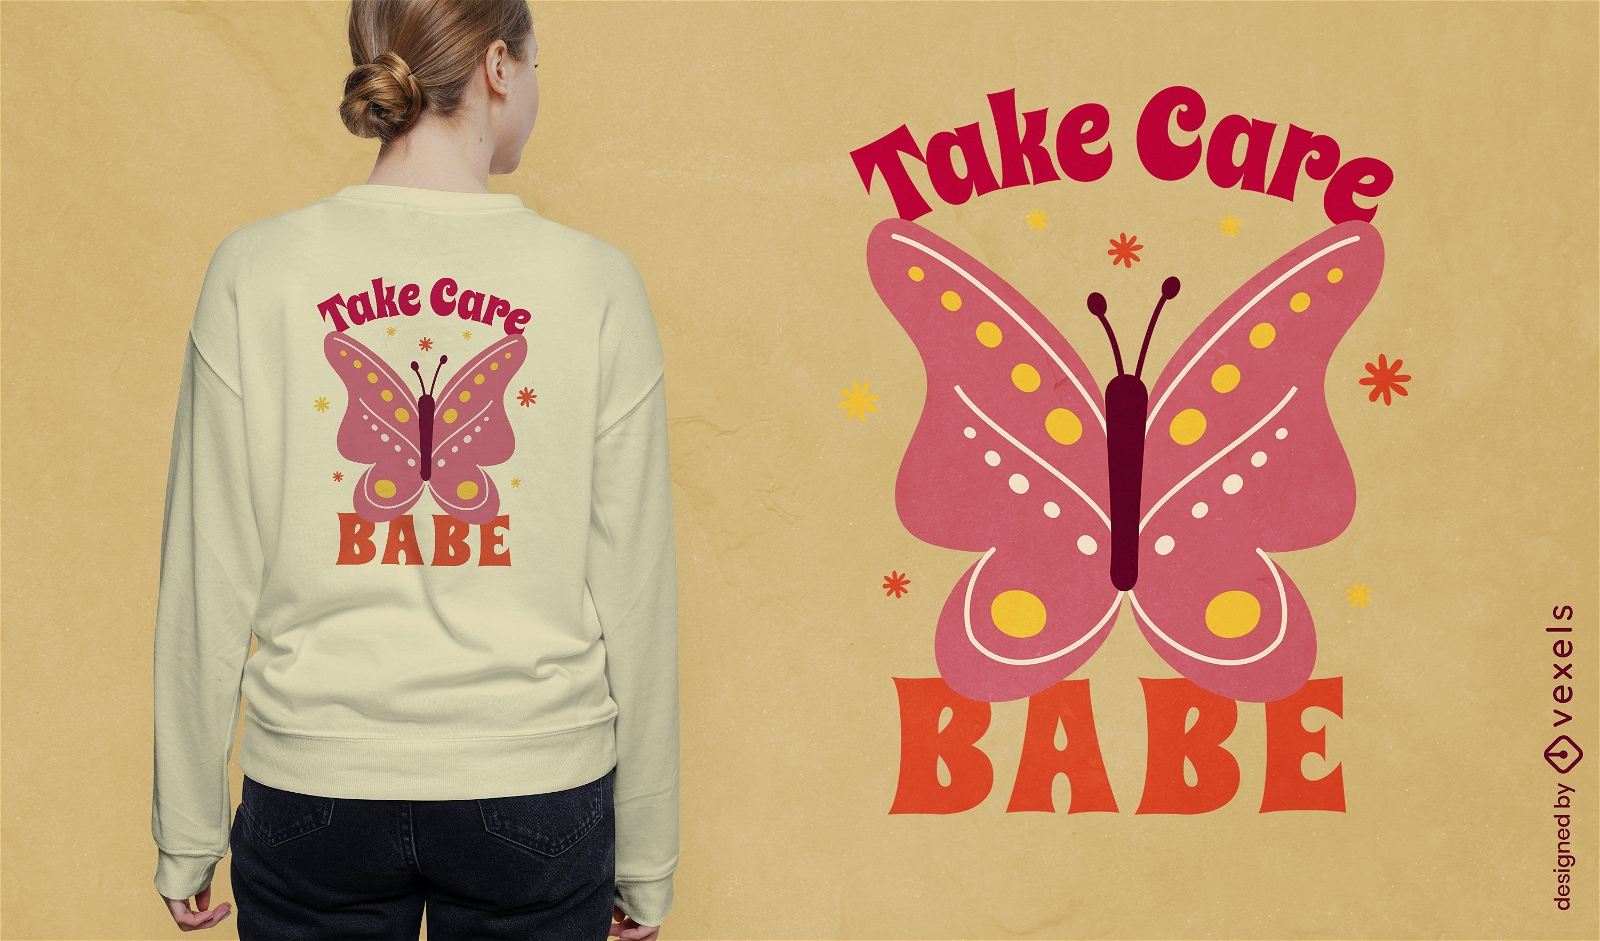 Cuide-se design de camiseta com citação de borboleta